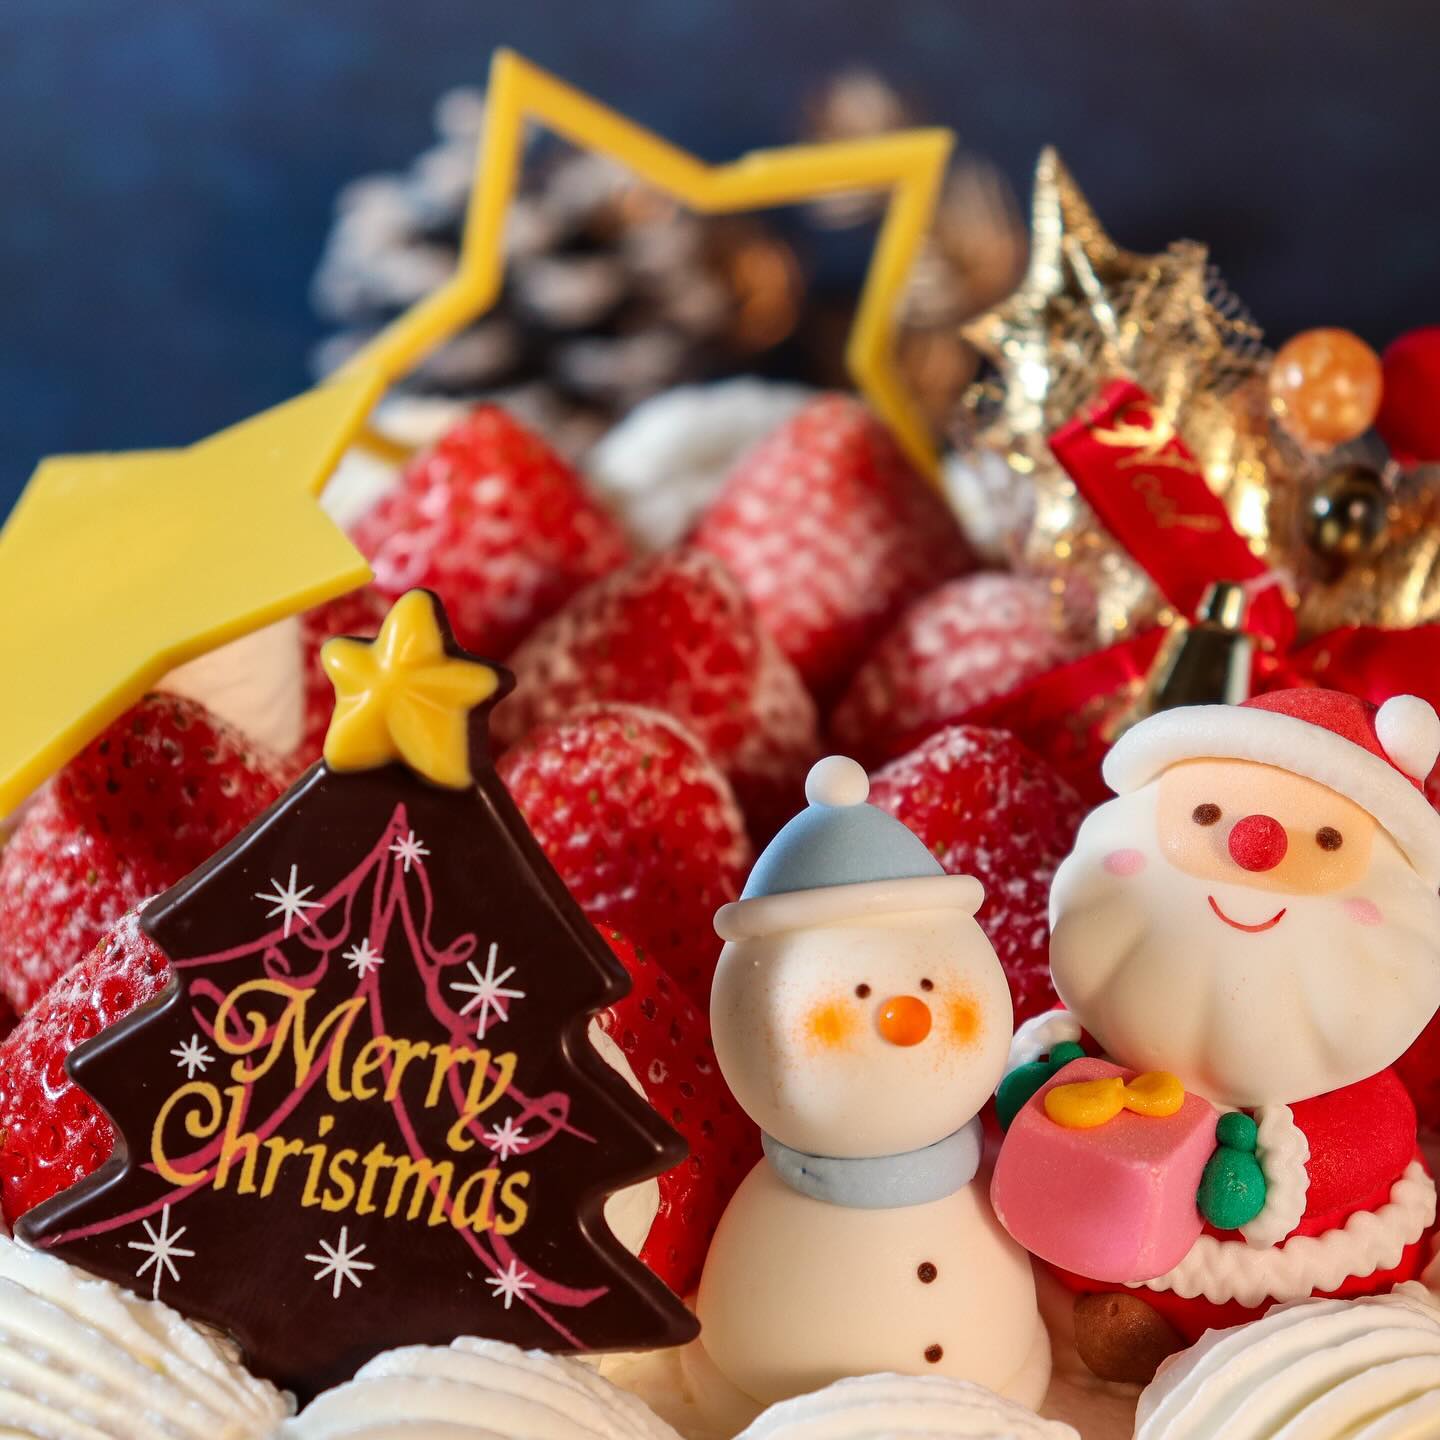 クリスマスケーキNO.3

Xmasスペシャル
デコレーション

6 号 (18cm) 限定400台
¥5,100( 税込 ¥5,508)

生クリームデコレーションをベースに 
厚切りにした完熟苺をサンドしました。 
ふんだんに飾った丸ごとの苺と
チョコレー トの飾りが華やかさを
演出します。 
ワンランク上のクリスマスケーキを
ご堪能ください。